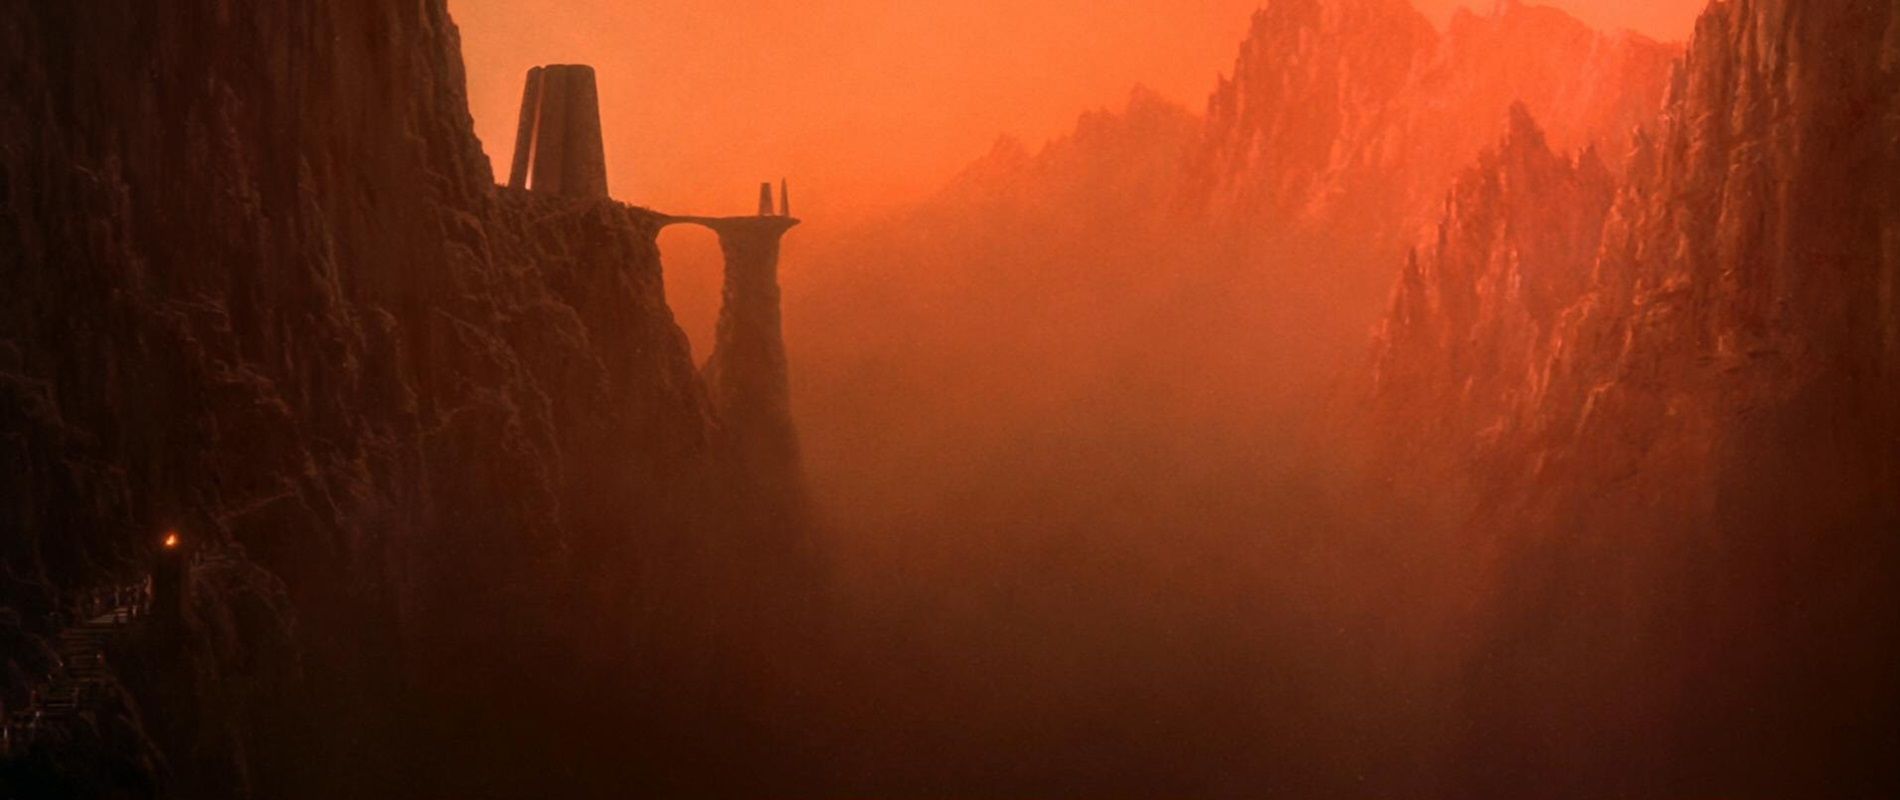 Почему Леонард Нимой снял «Звездный путь III: В поисках Спока»